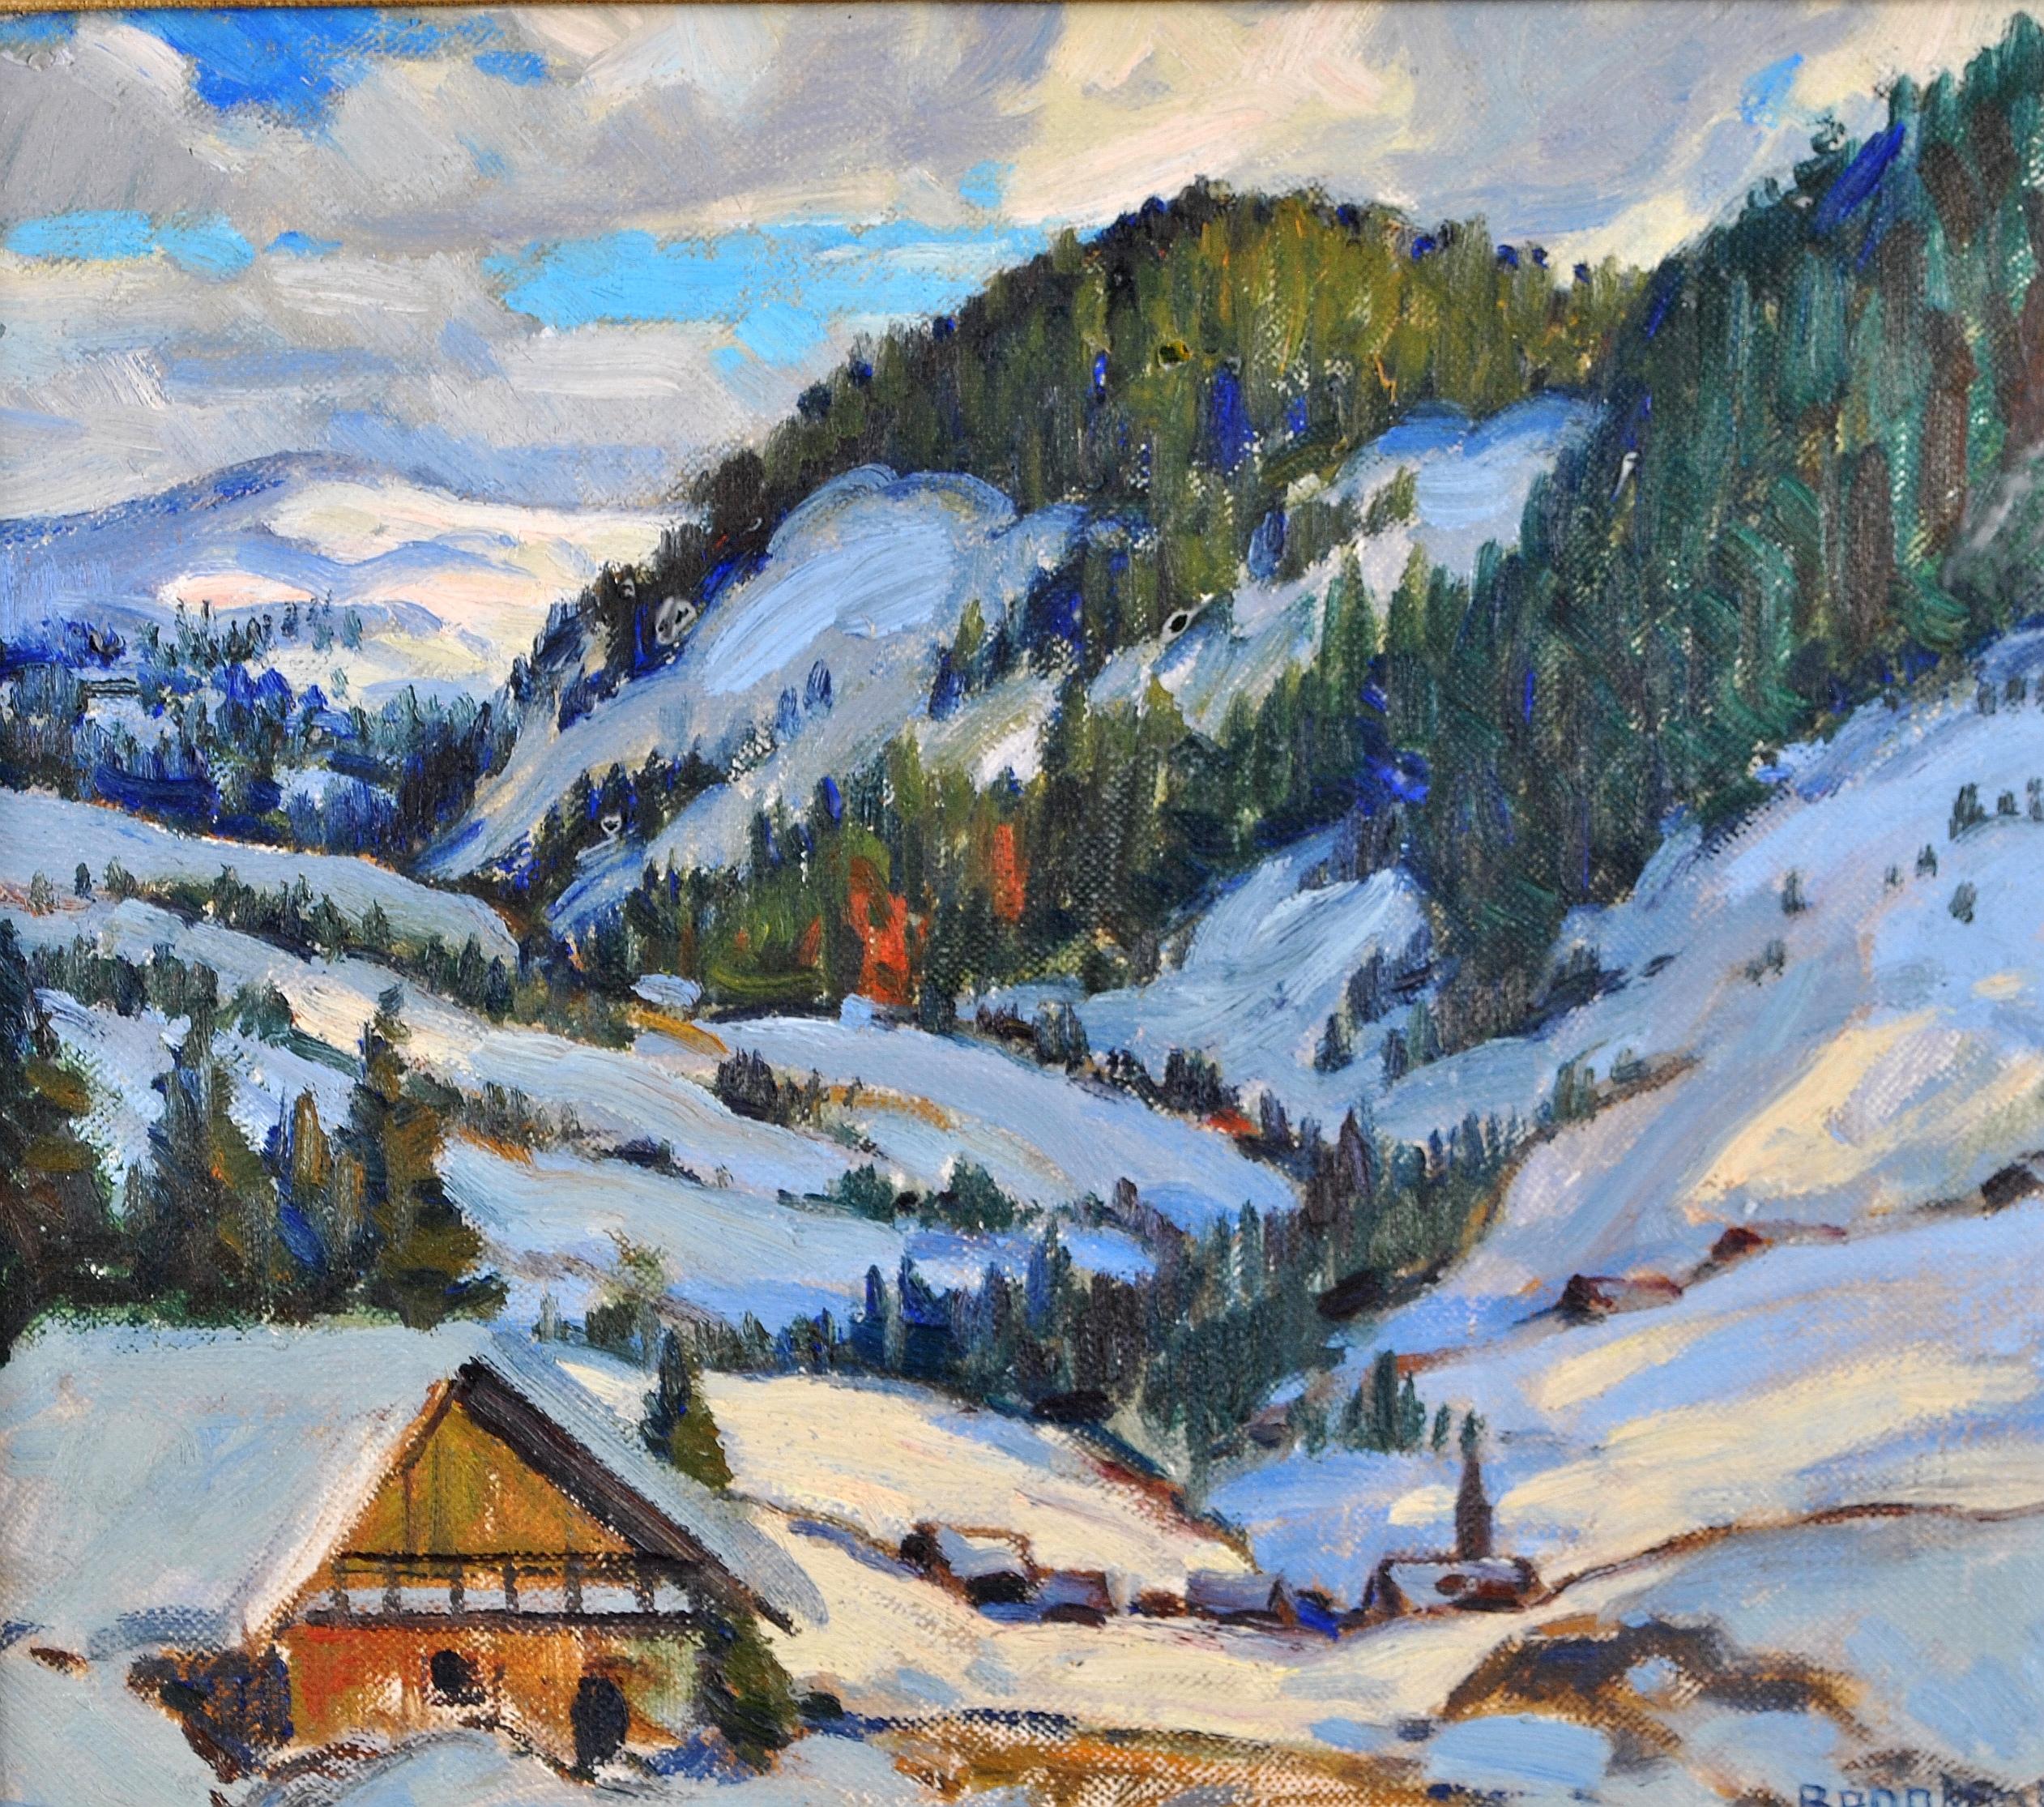 Eine schöne 1940's impressionistischen Öl auf Leinwand auf Karton gelegt Darstellung einer verschneiten Alpenlandschaft von kanadischen RA Künstler Adolphus George Broomfield.

Dieses Werk von hervorragender Qualität und in ausgezeichnetem Zustand